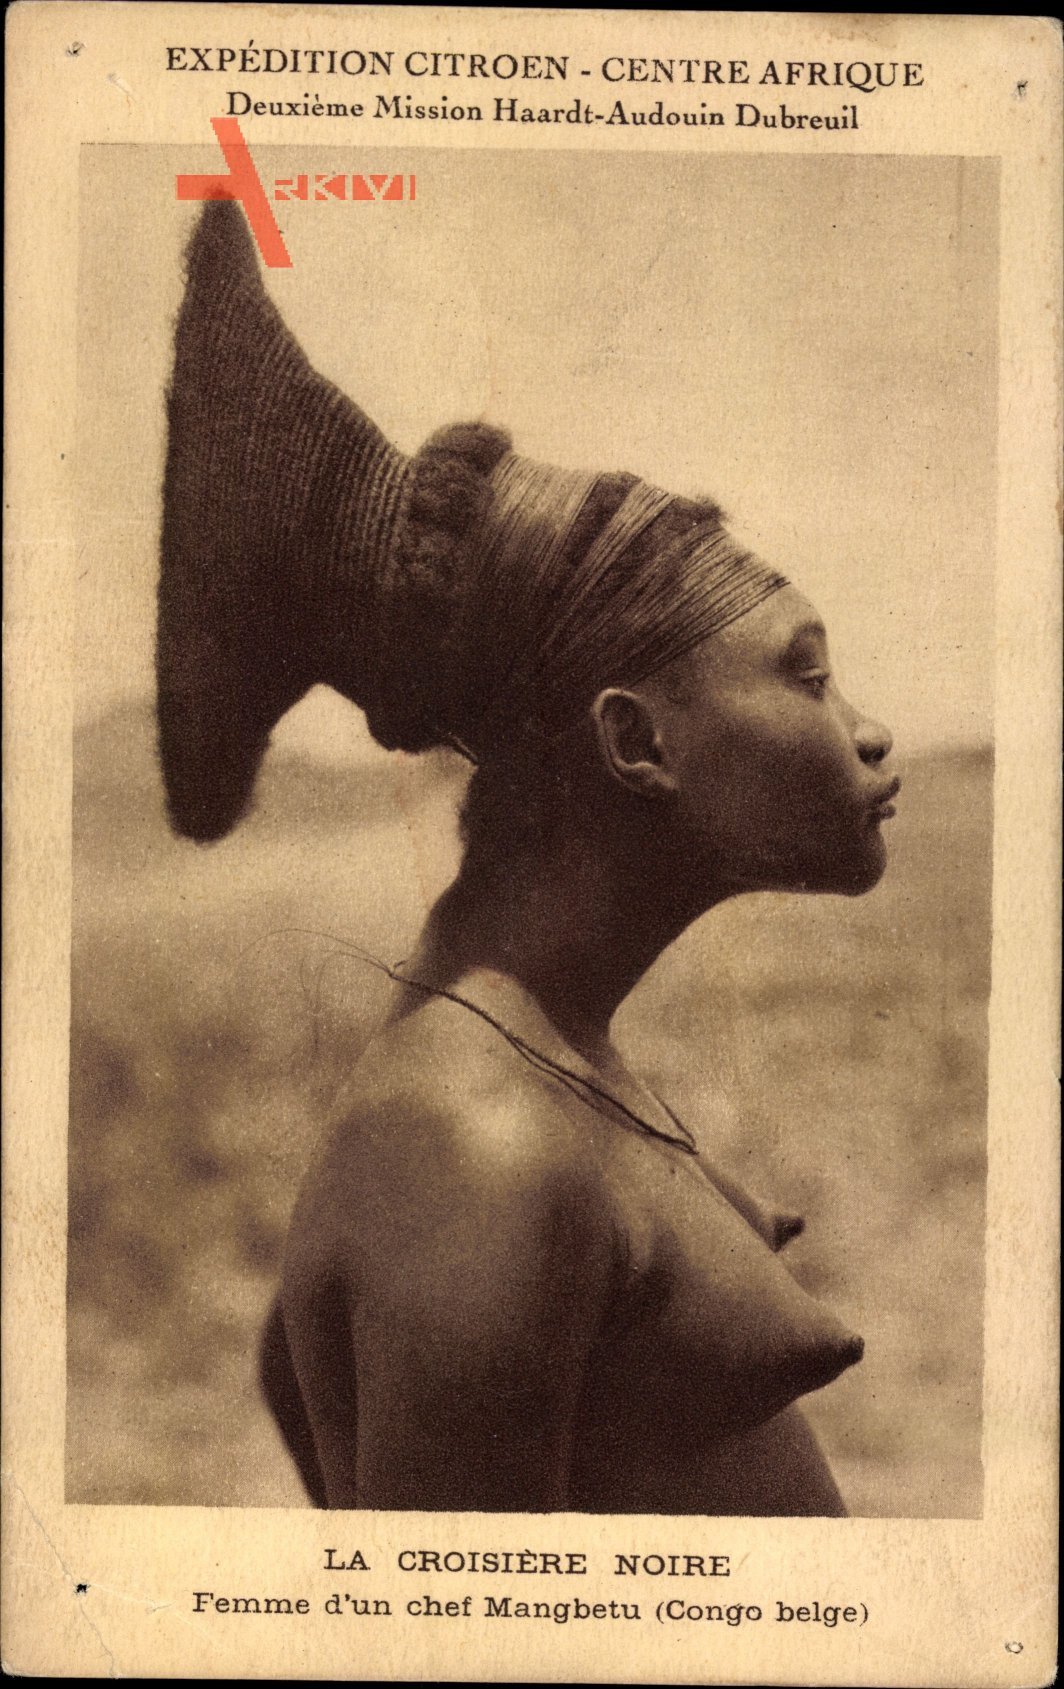 La Croisière Noire, Expédition Citroen, Centre Afrique, Femme Mangbetu, Congo